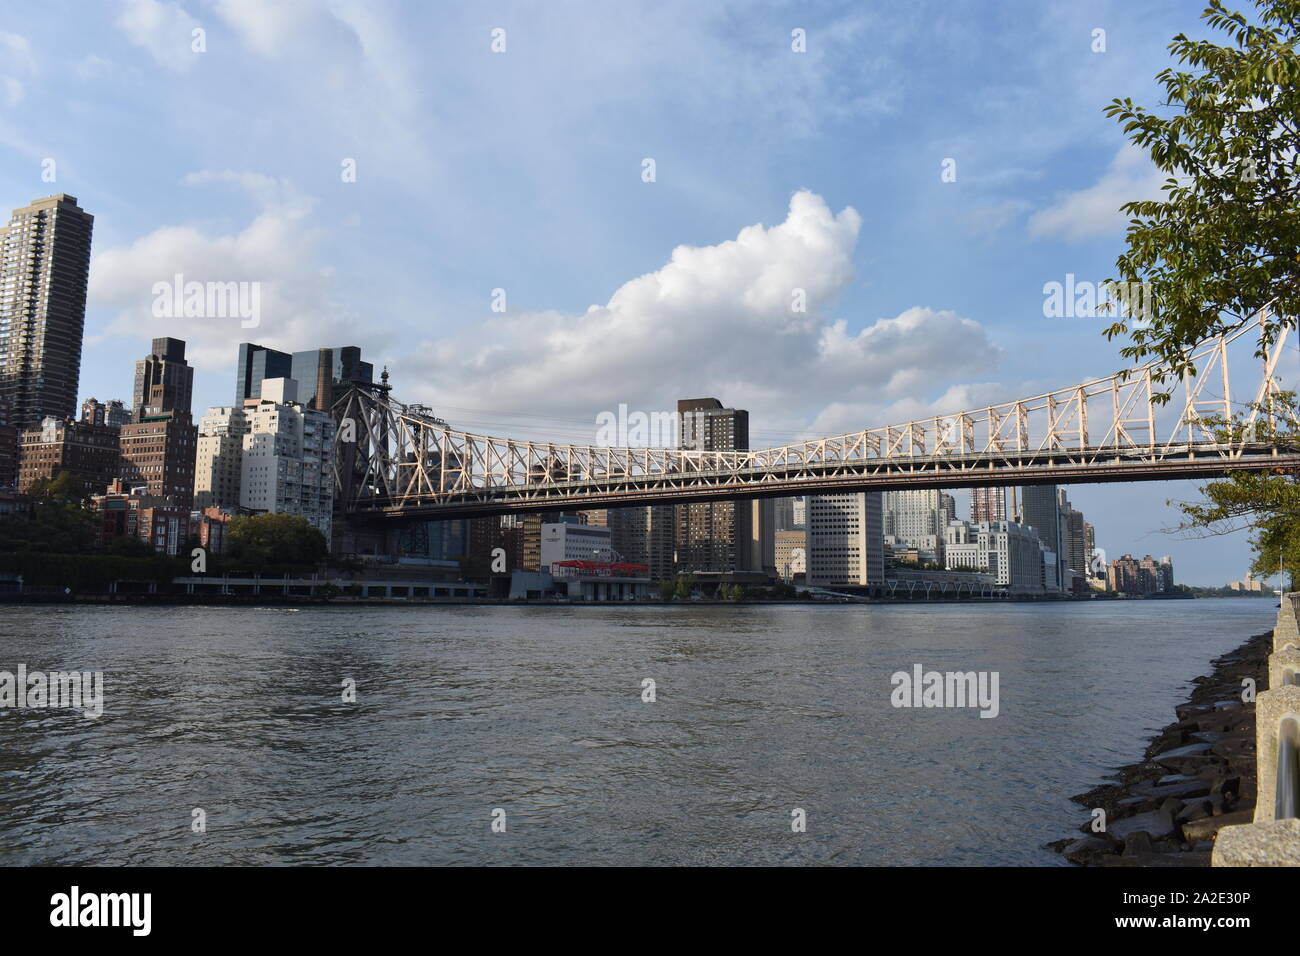 L'Ed Koch Queensboro Bridge, alias la 59e rue, pont et le midtown Manhattan, vue de la ville de New York's Roosevelt Island. -08 Banque D'Images